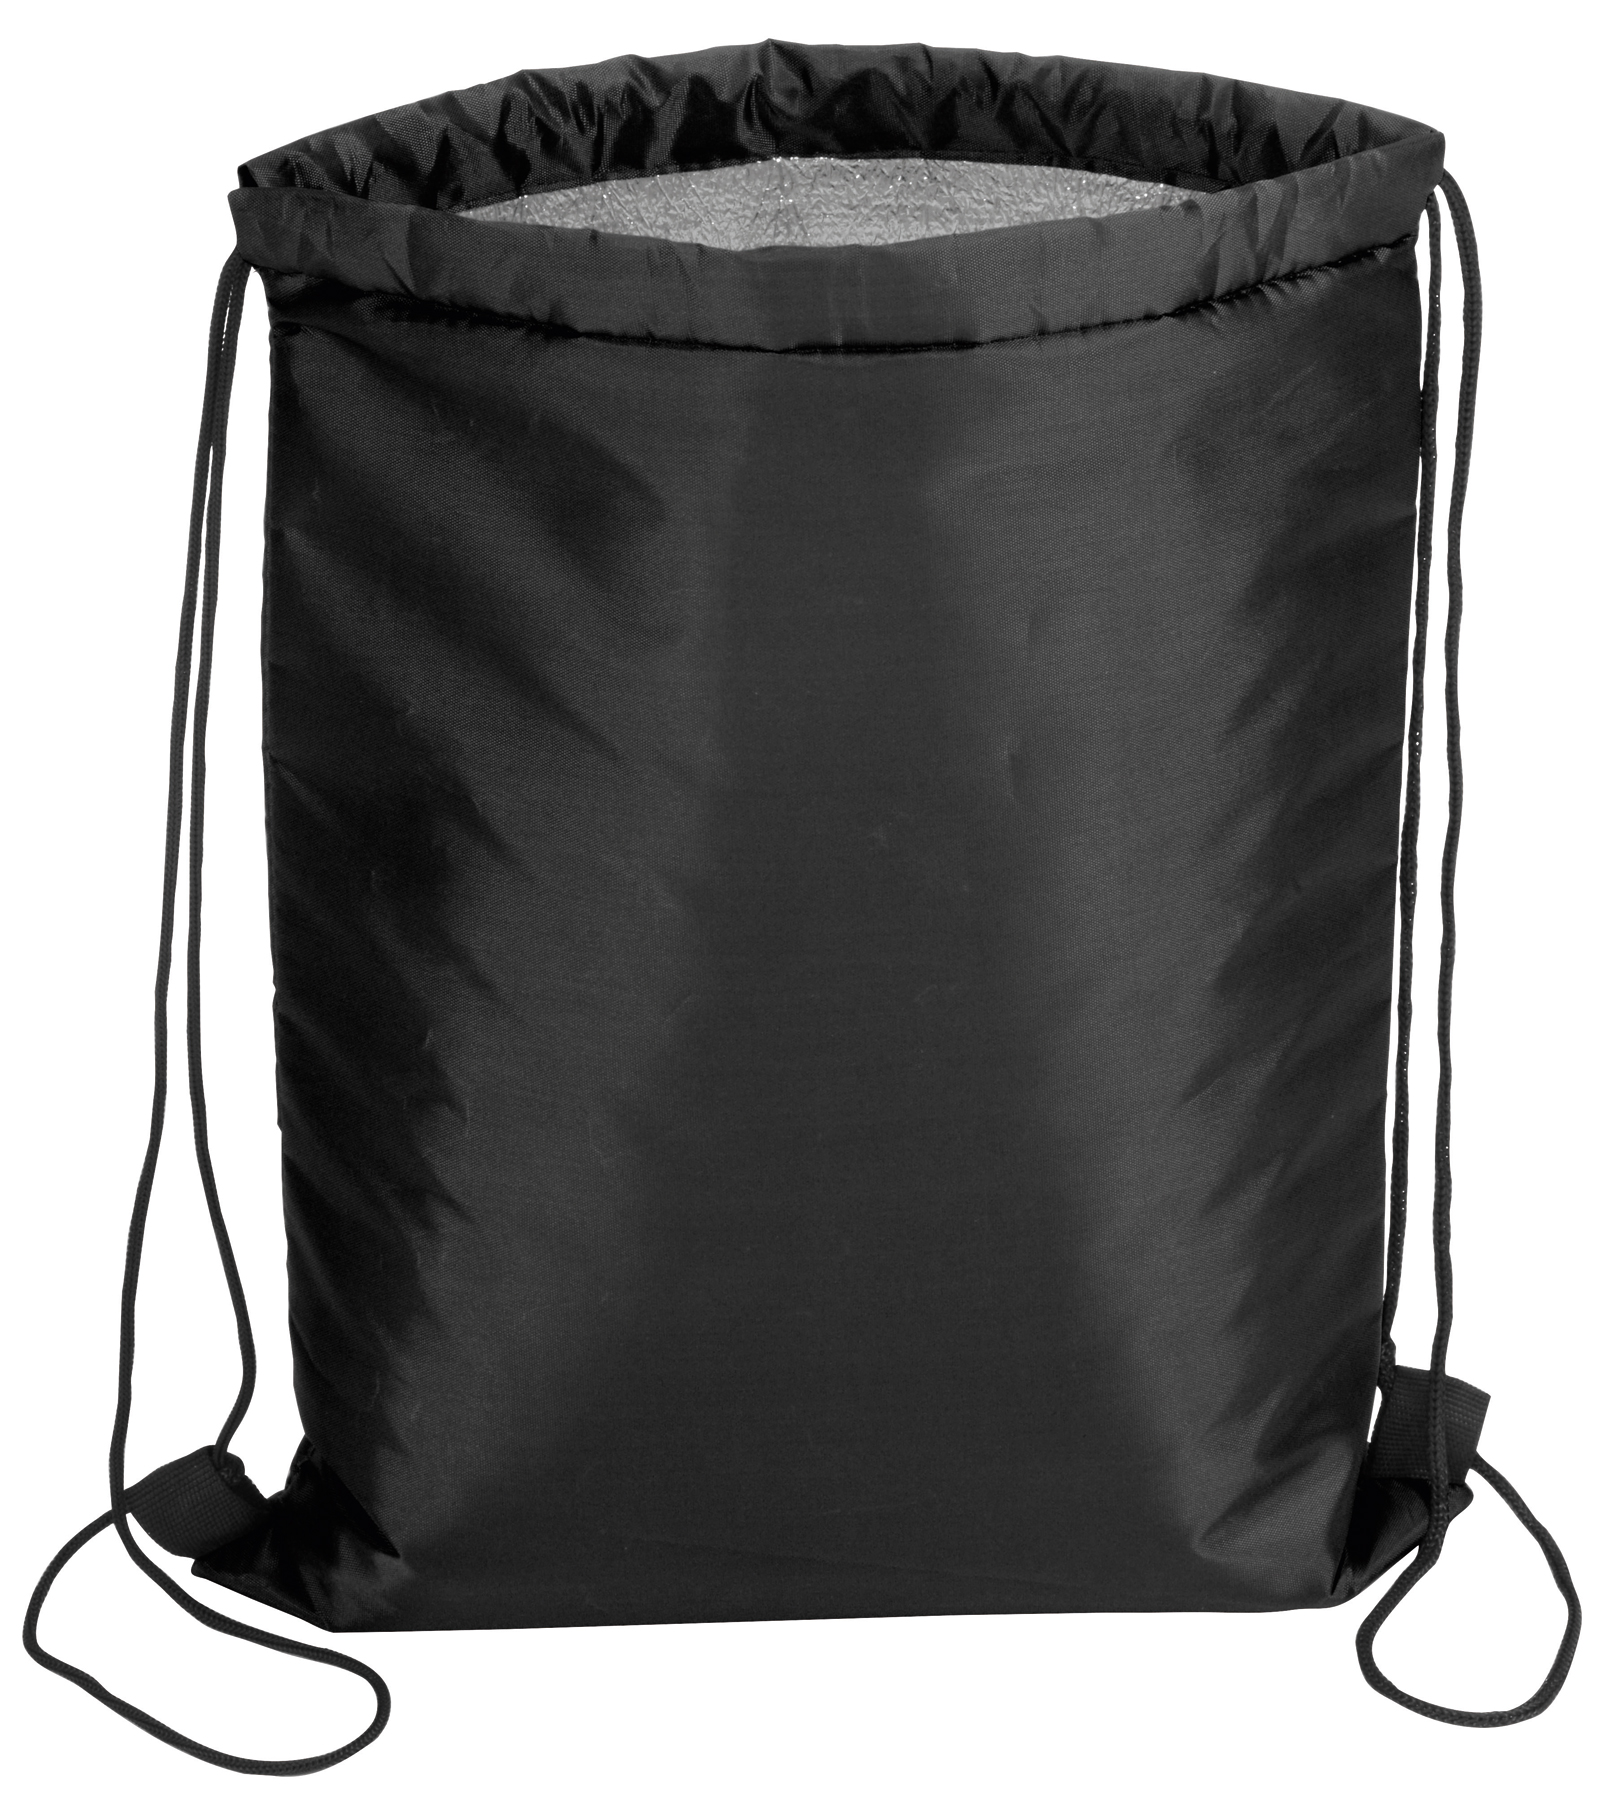 Plecak chłodzący ISO COOL, czarny